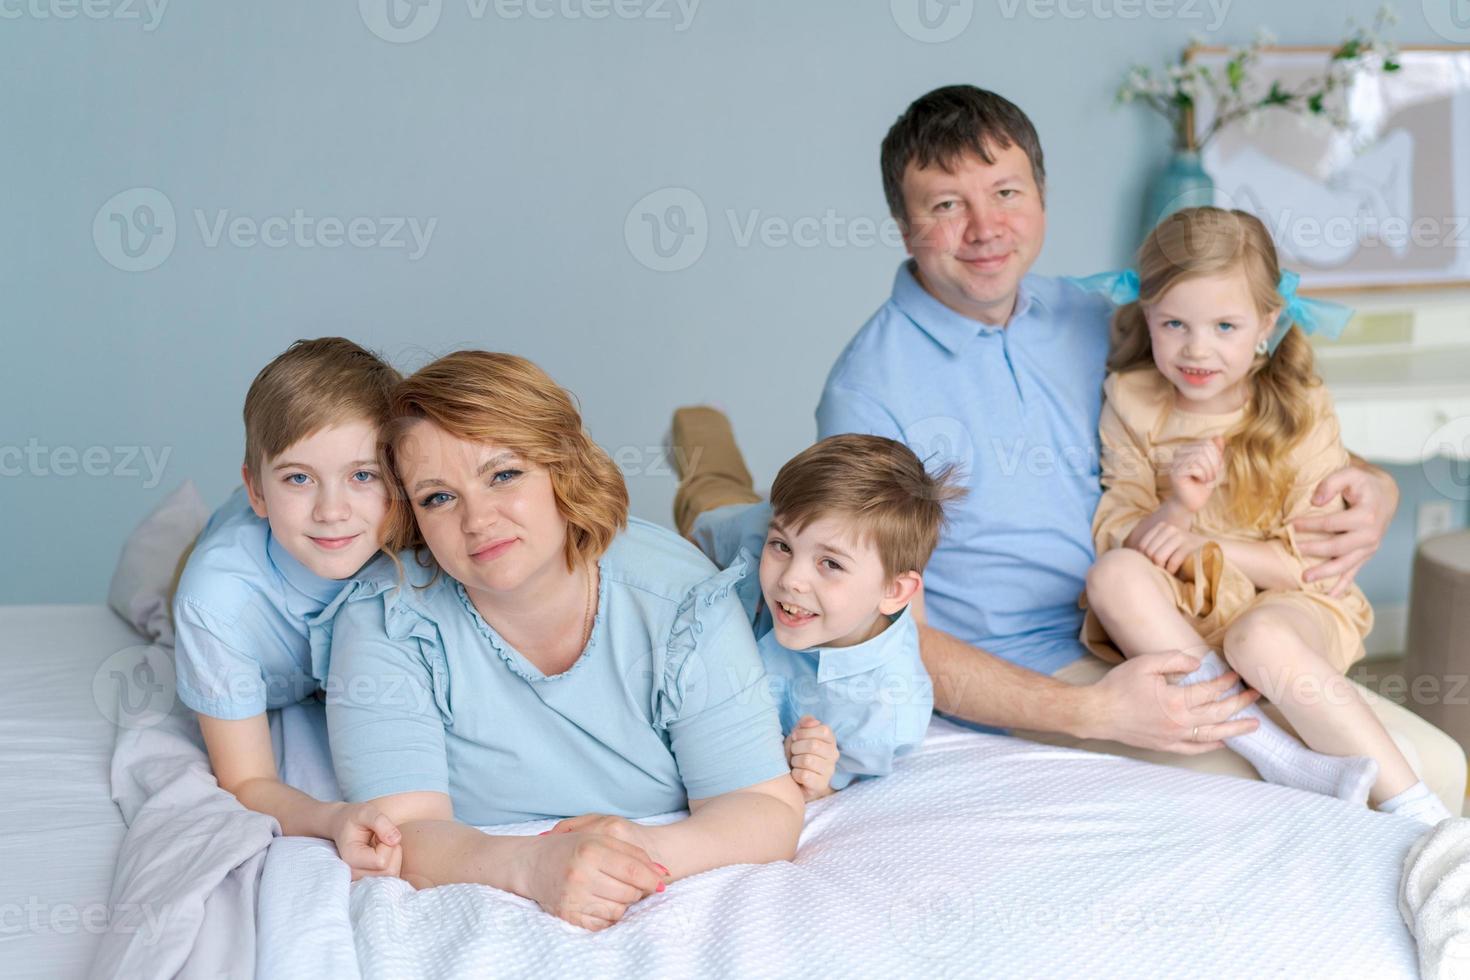 portrait appréciant le sourire heureux amour famille caucasienne père et mère, parents photo